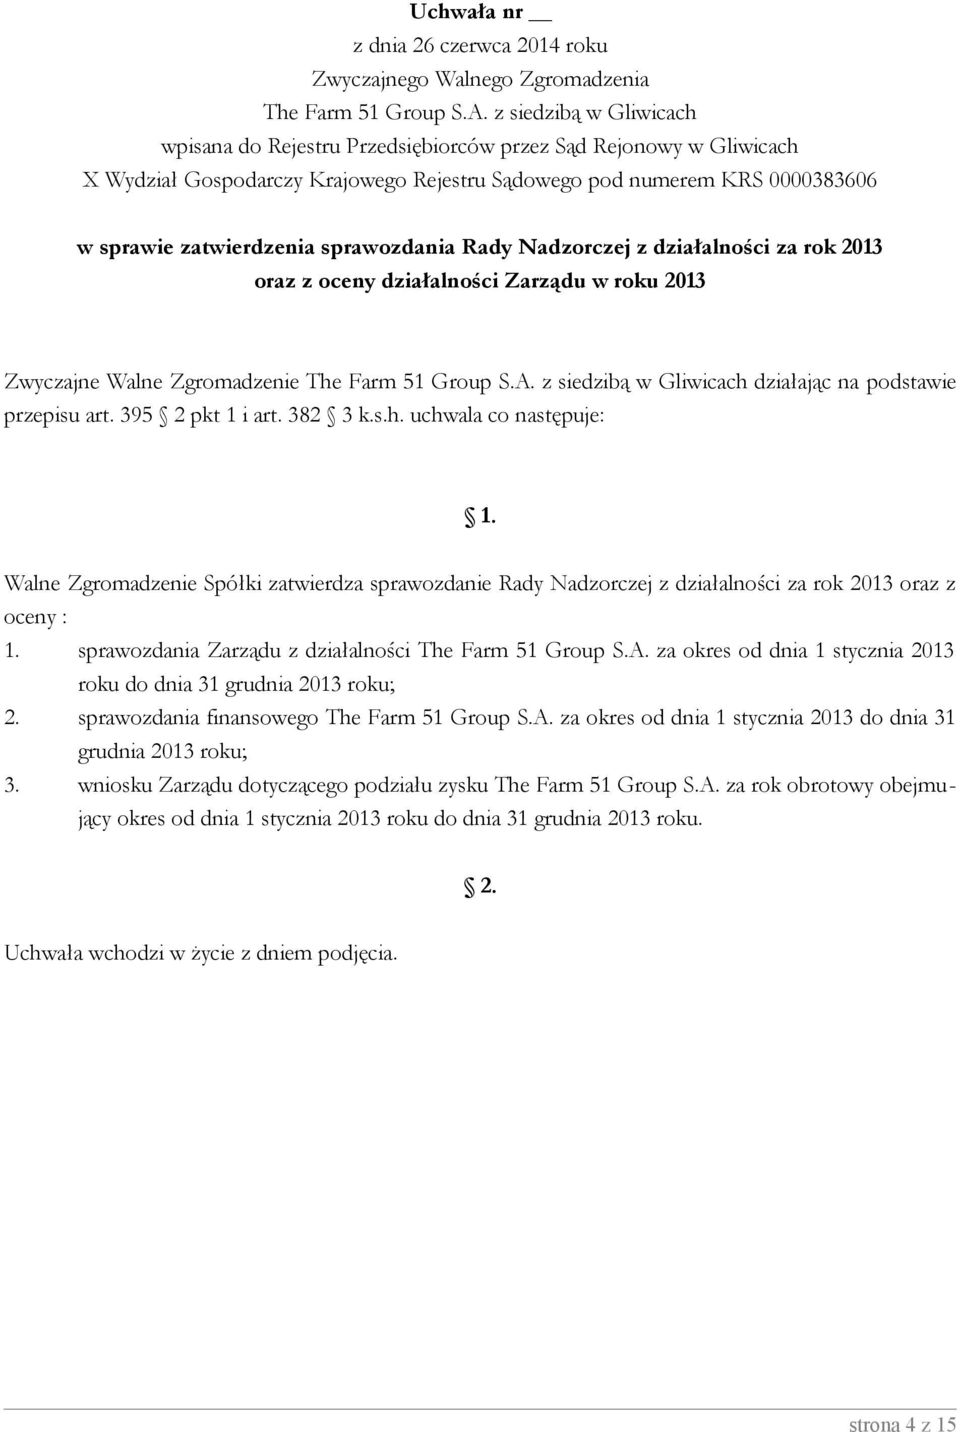 A. za okres od dnia 1 stycznia 2013 roku do dnia 31 grudnia 2013 roku; 2. sprawozdania finansowego The Farm 51 Group S.A. za okres od dnia 1 stycznia 2013 do dnia 31 grudnia 2013 roku; 3.